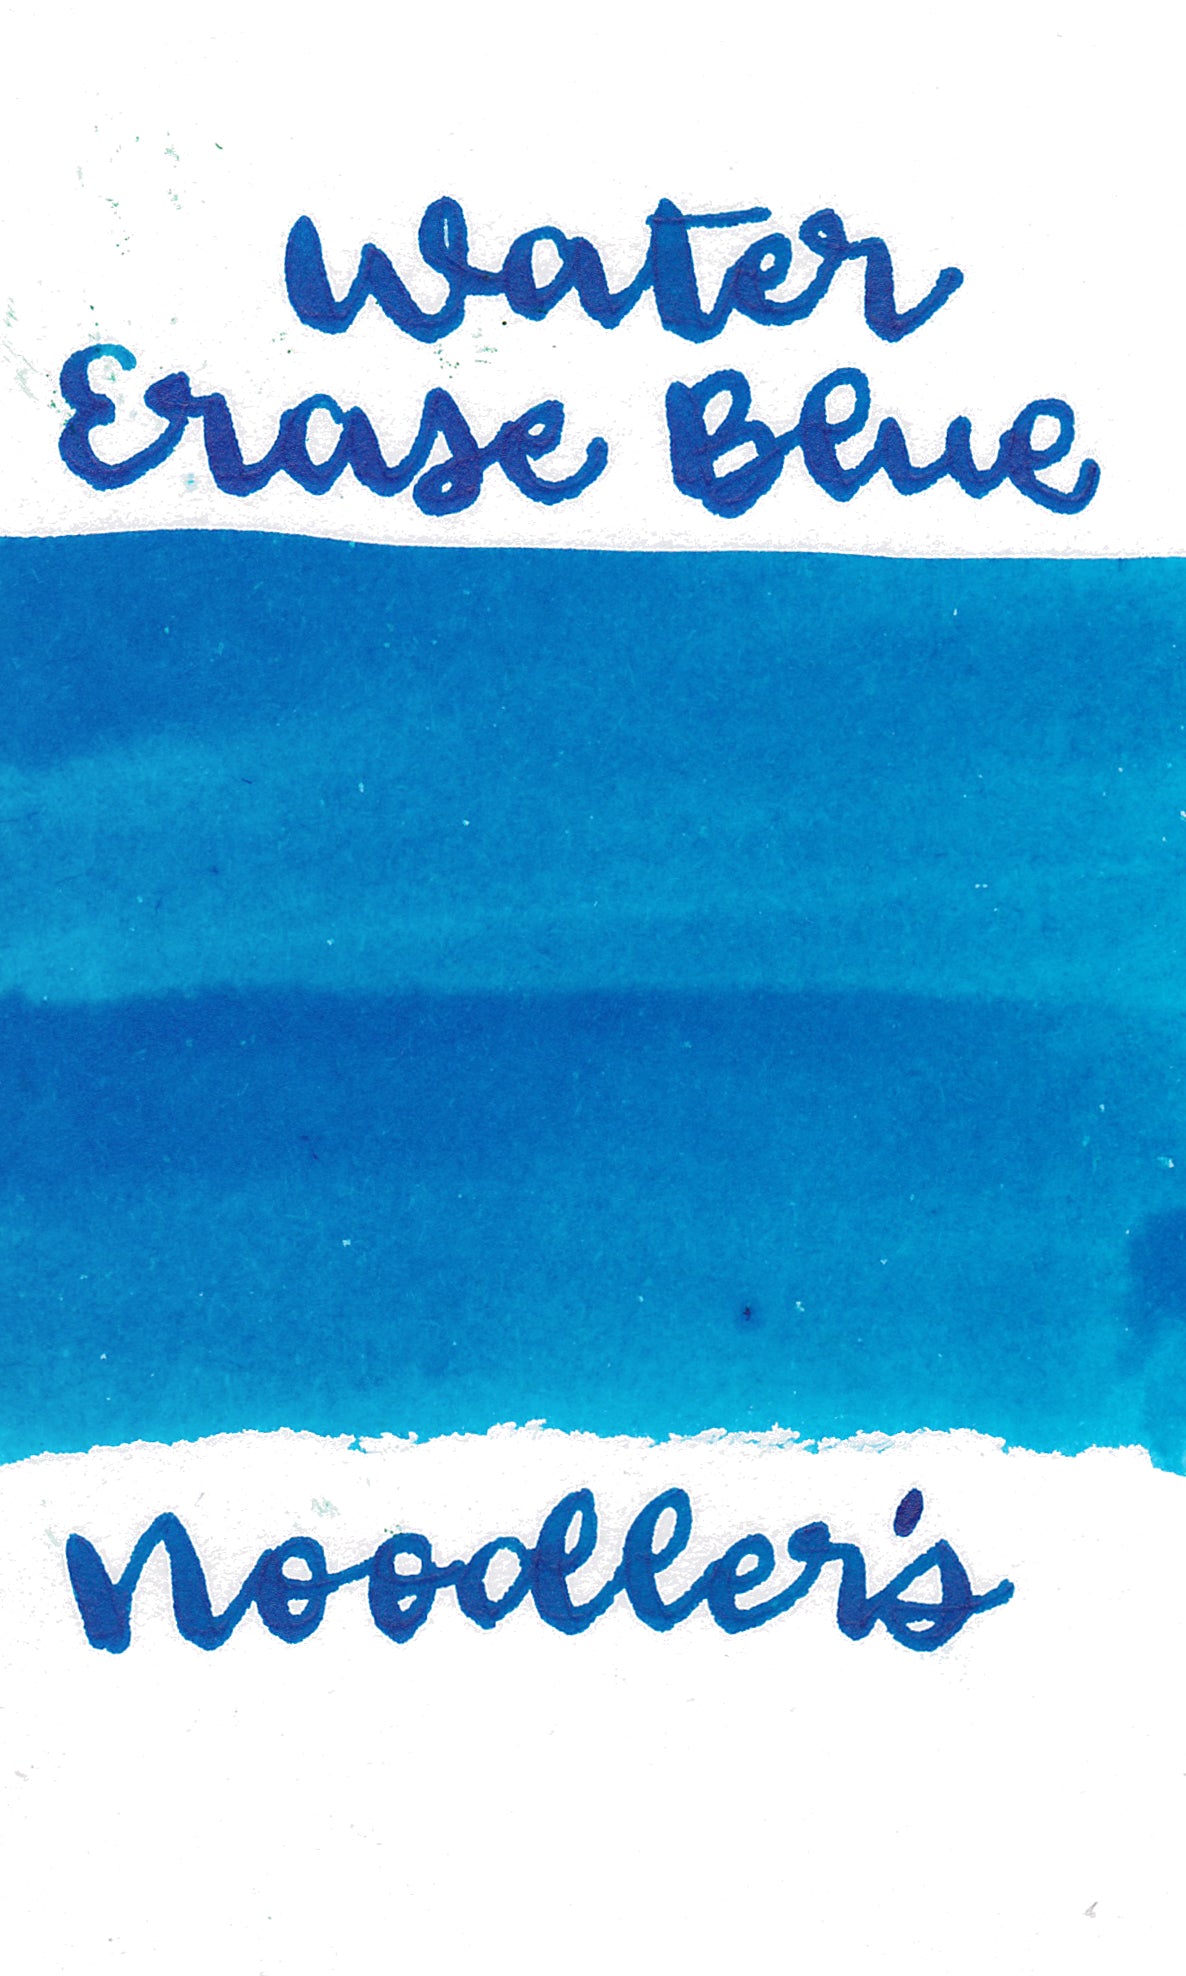 Noodler's Bluerase Ink - 4.5 oz Bottle